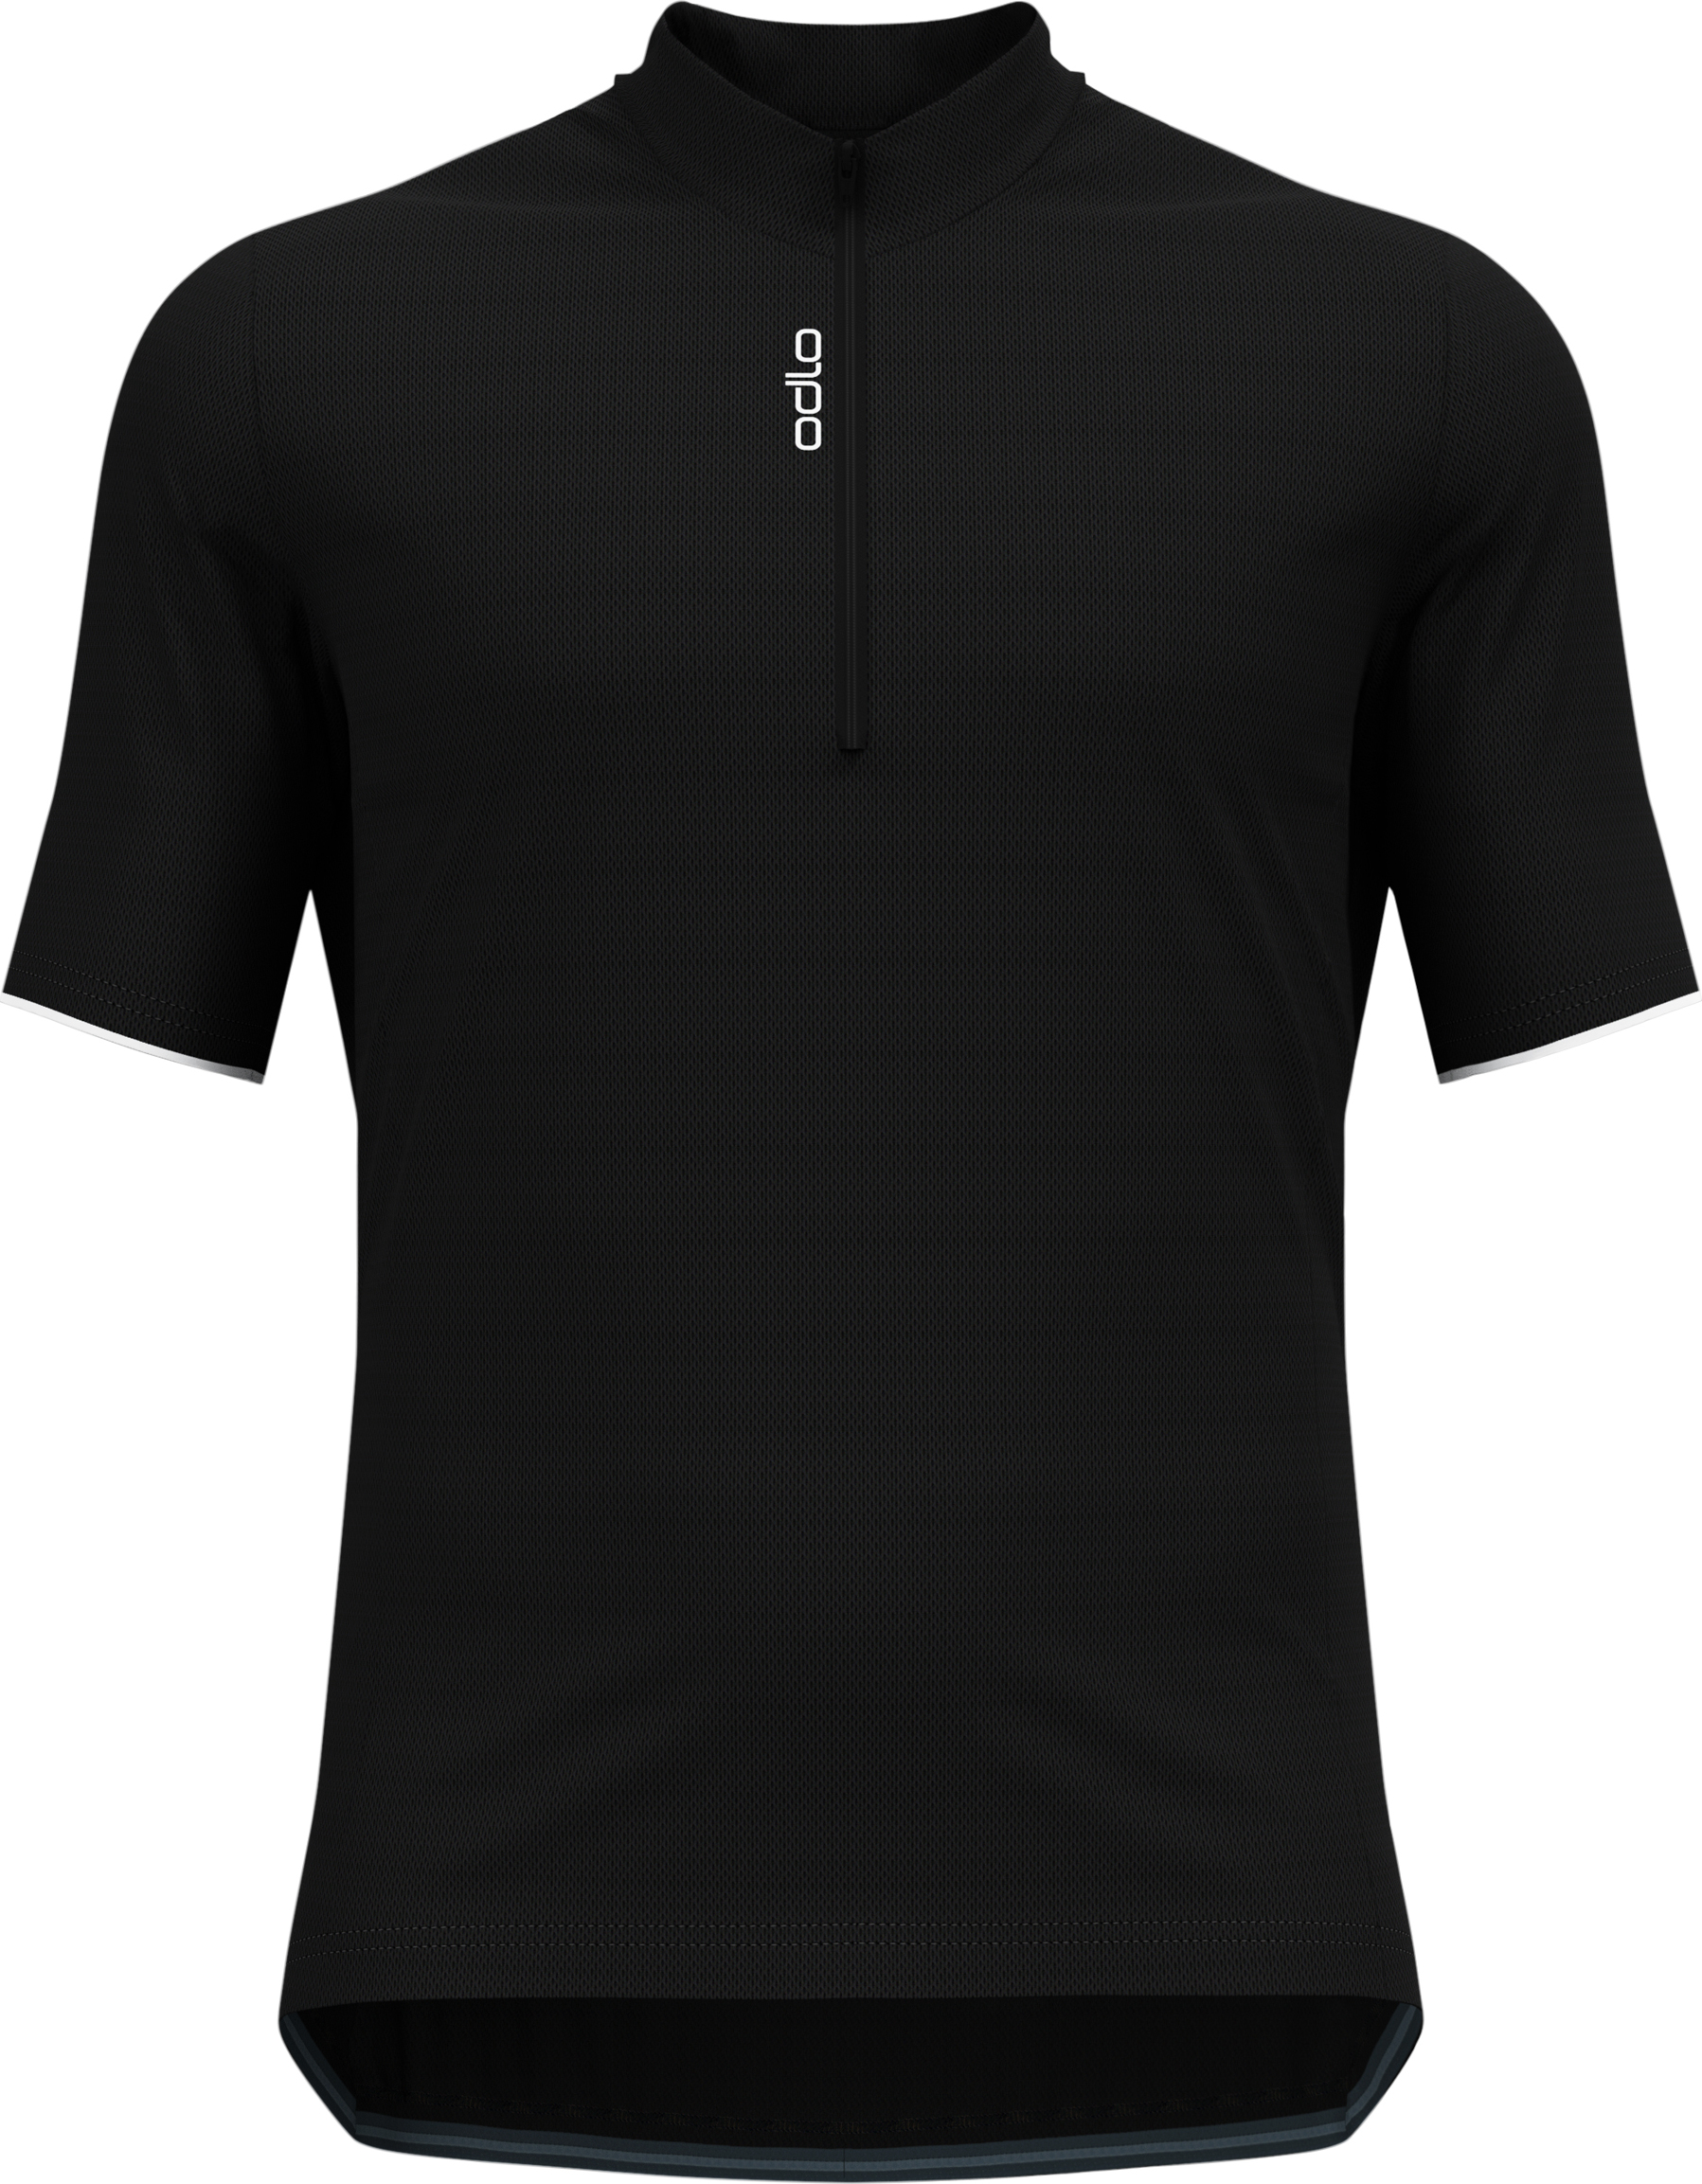 Odlo Men’s T-shirt S/U Collar S/S 1/2 Zip Essential Black